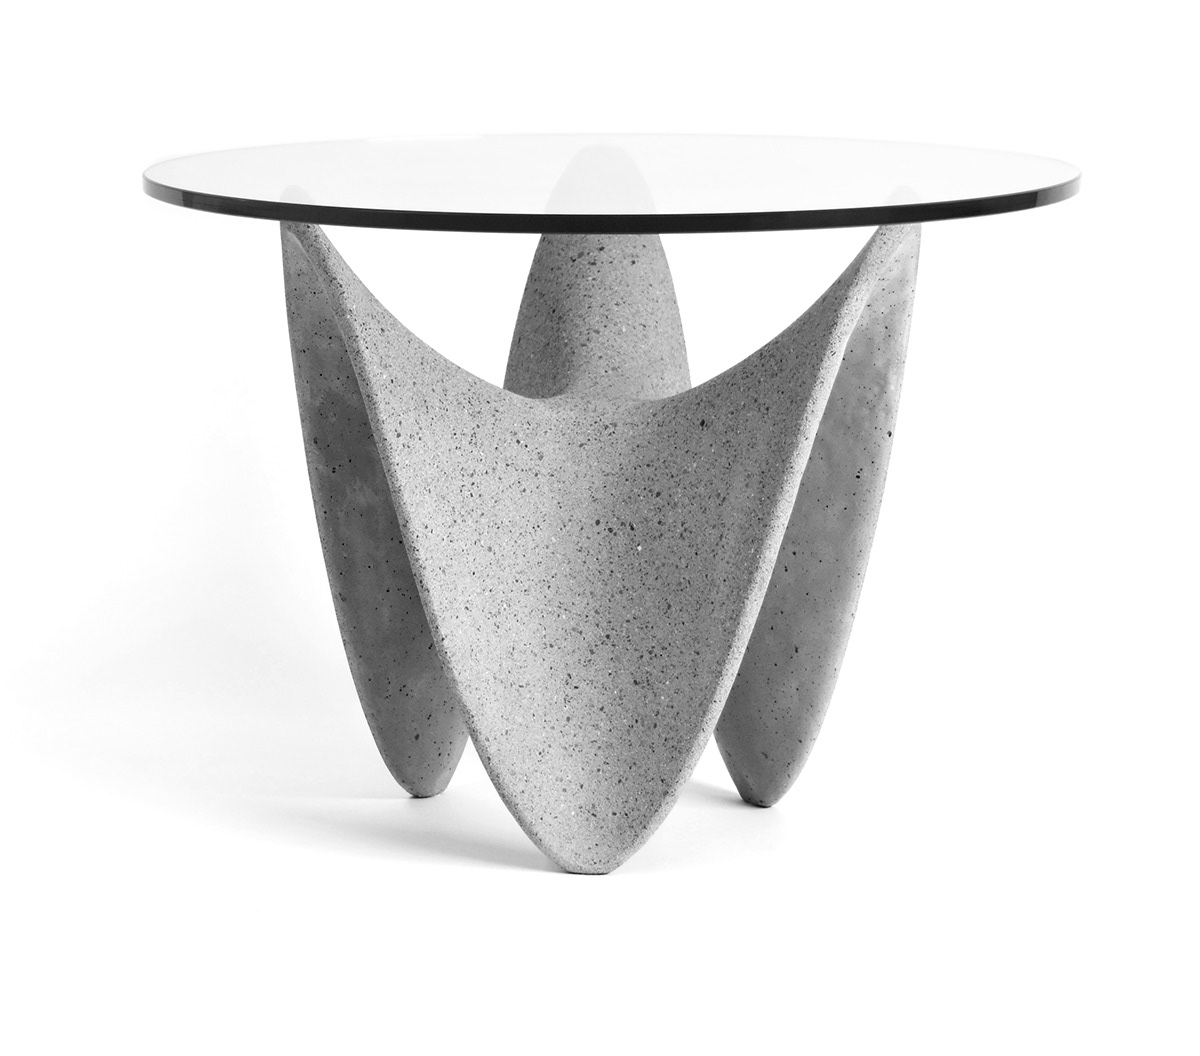 Candela Tables 概念边桌设计